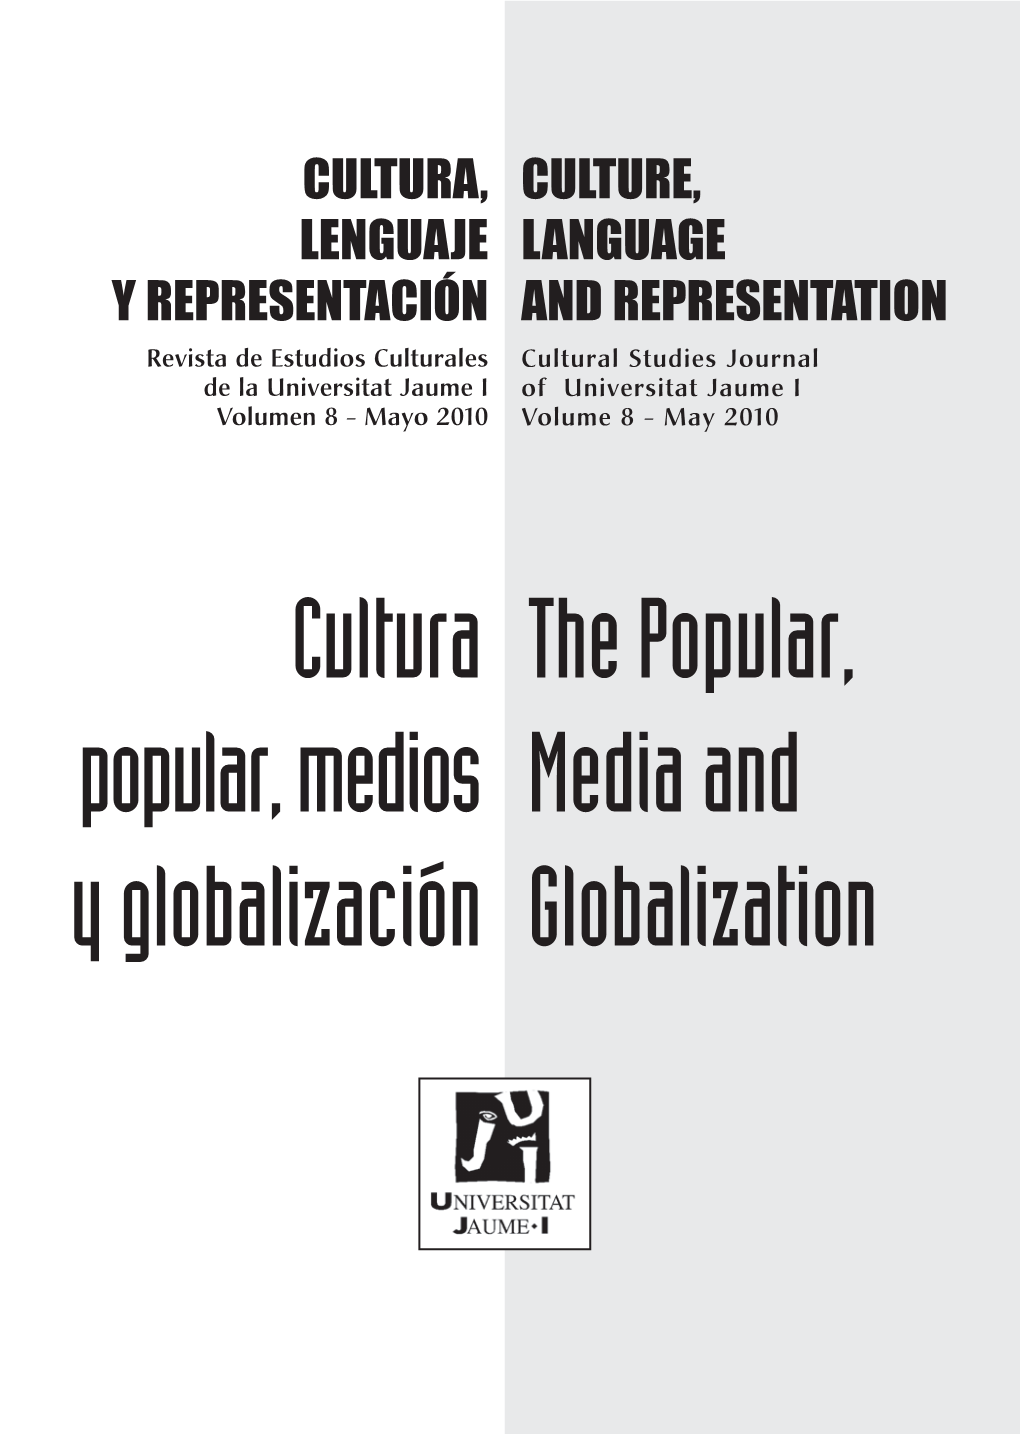 Cultura Popular, Medios Y Globalización the Popular, Media